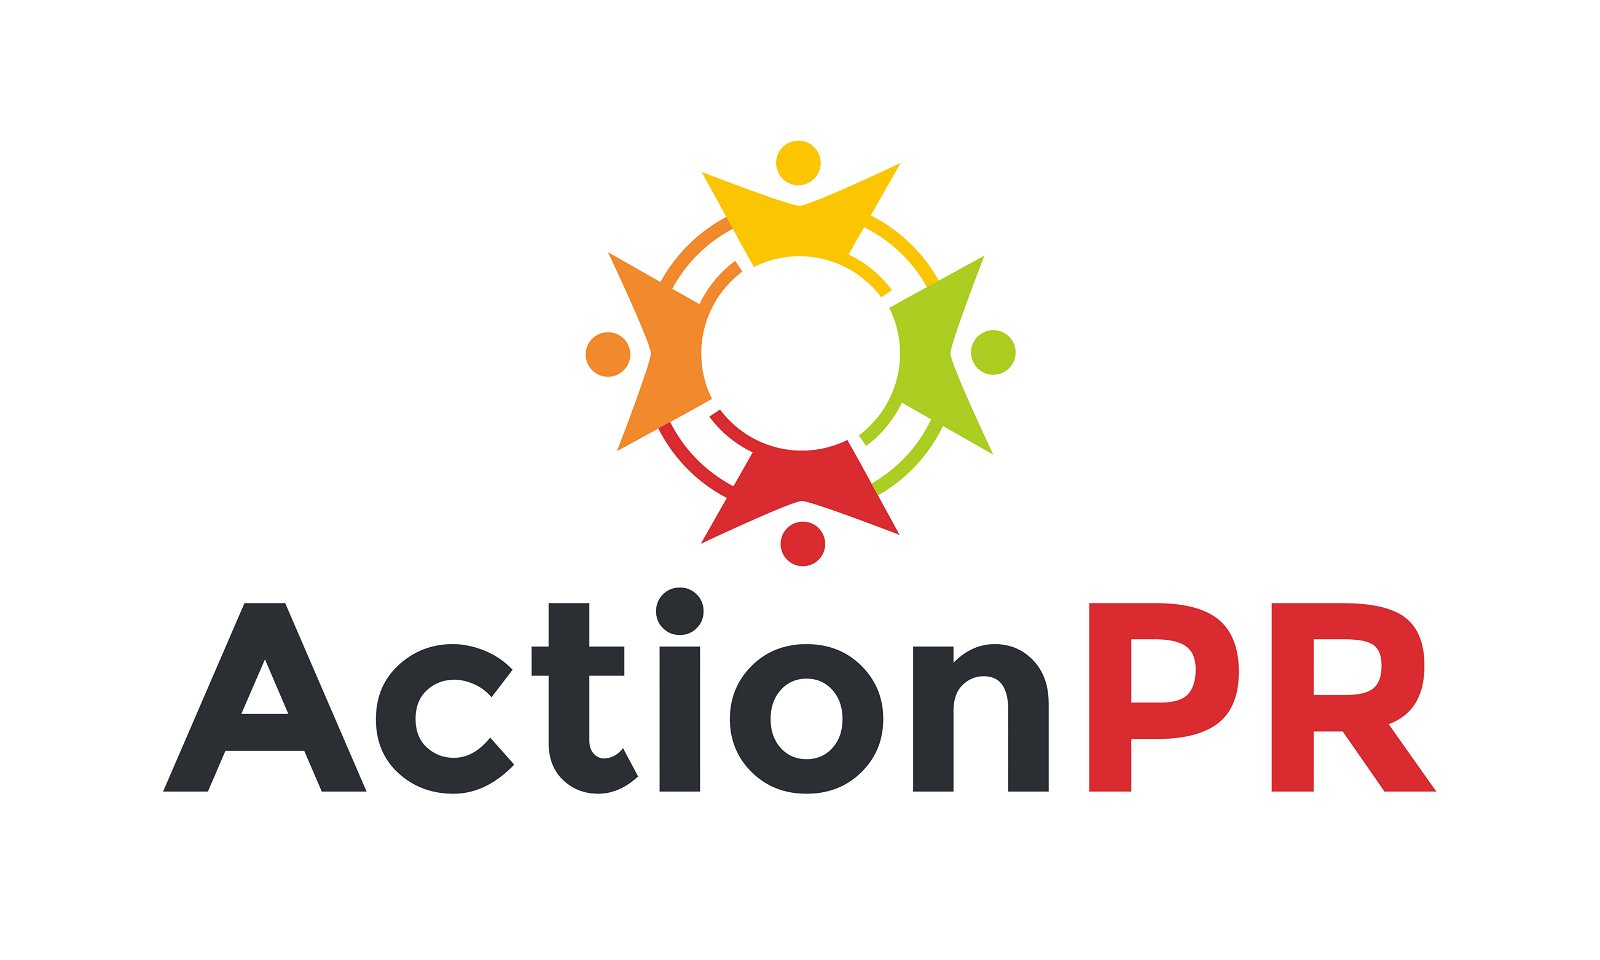 ActionPR.com - Creative brandable domain for sale